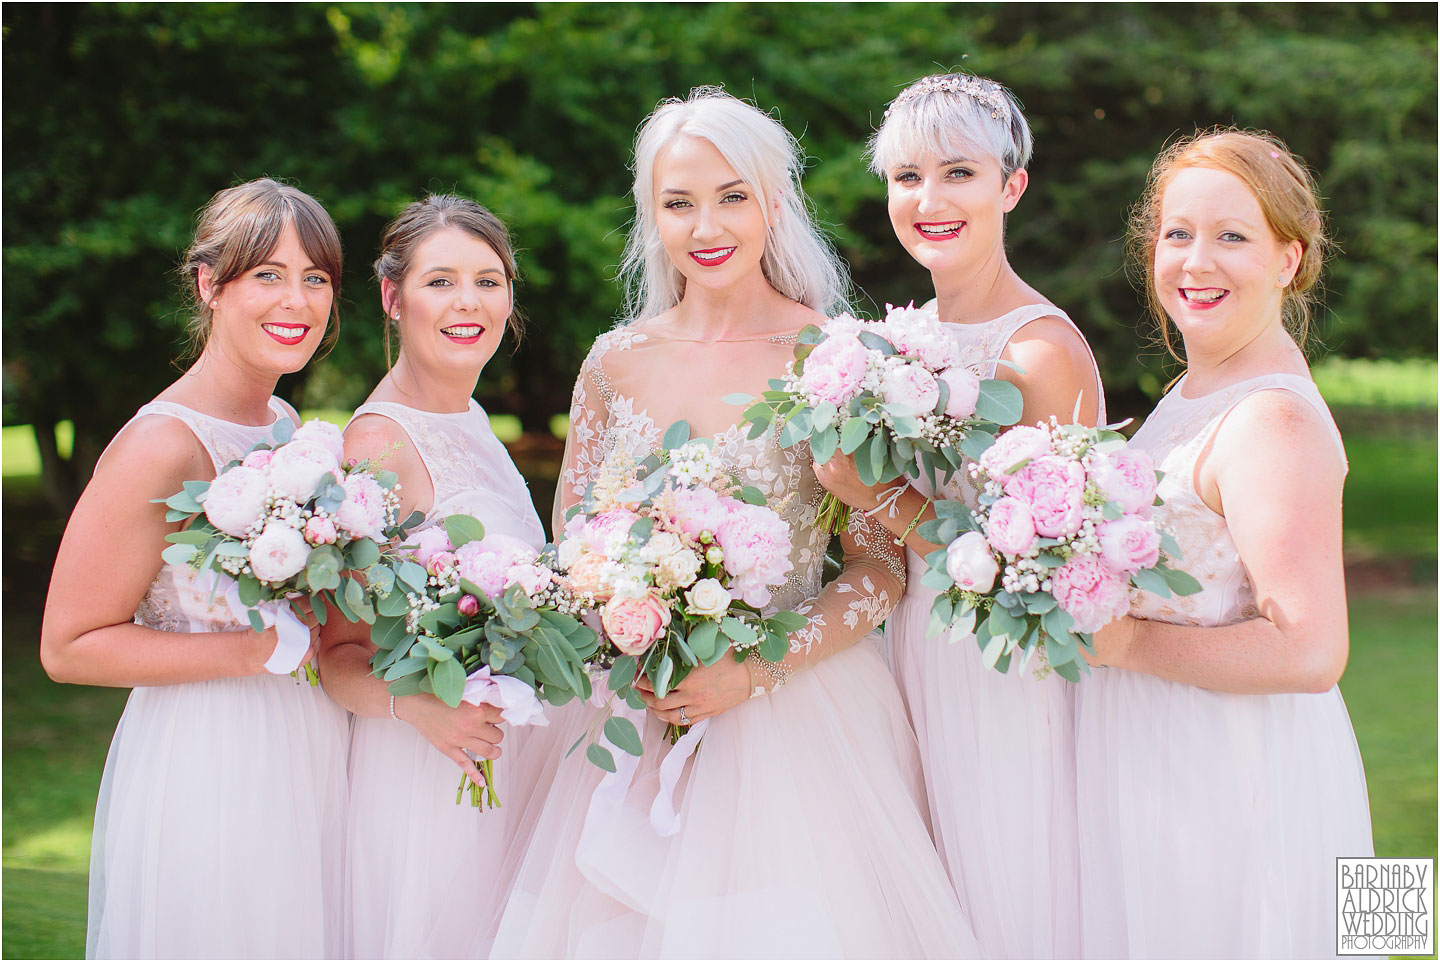 Beautiful Group wedding photo at Saltmarshe Hall, Amazing Yorkshire Wedding Photos, Best Yorkshire Wedding Photos 2018